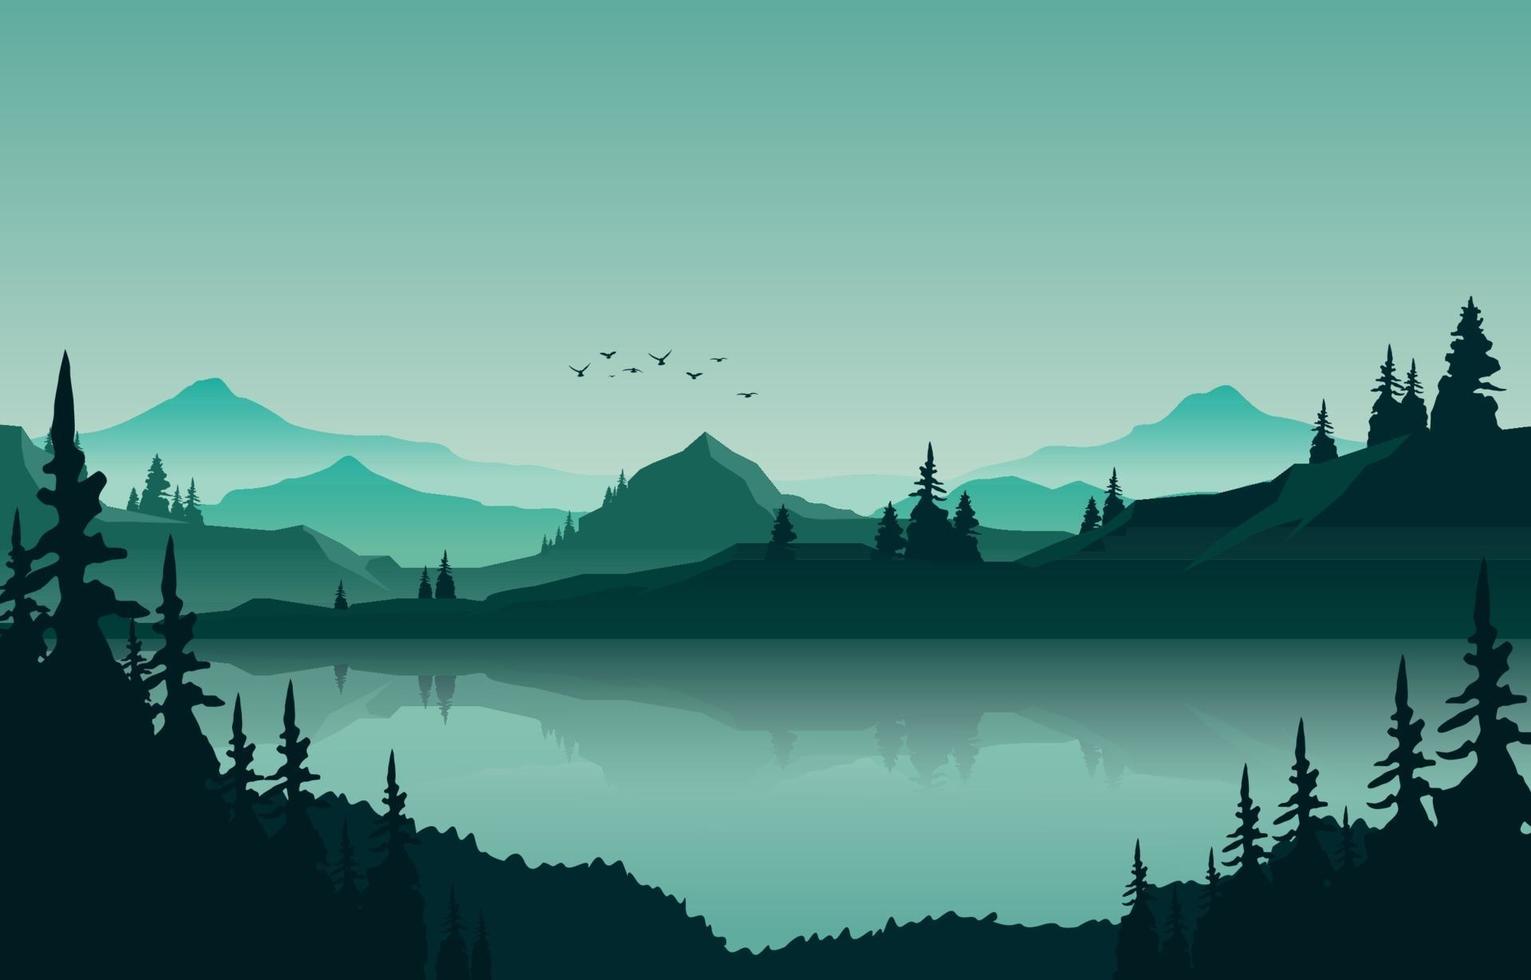 Seegebirgspanorama-Landschaft in der grünen monochromen flachen Illustration vektor